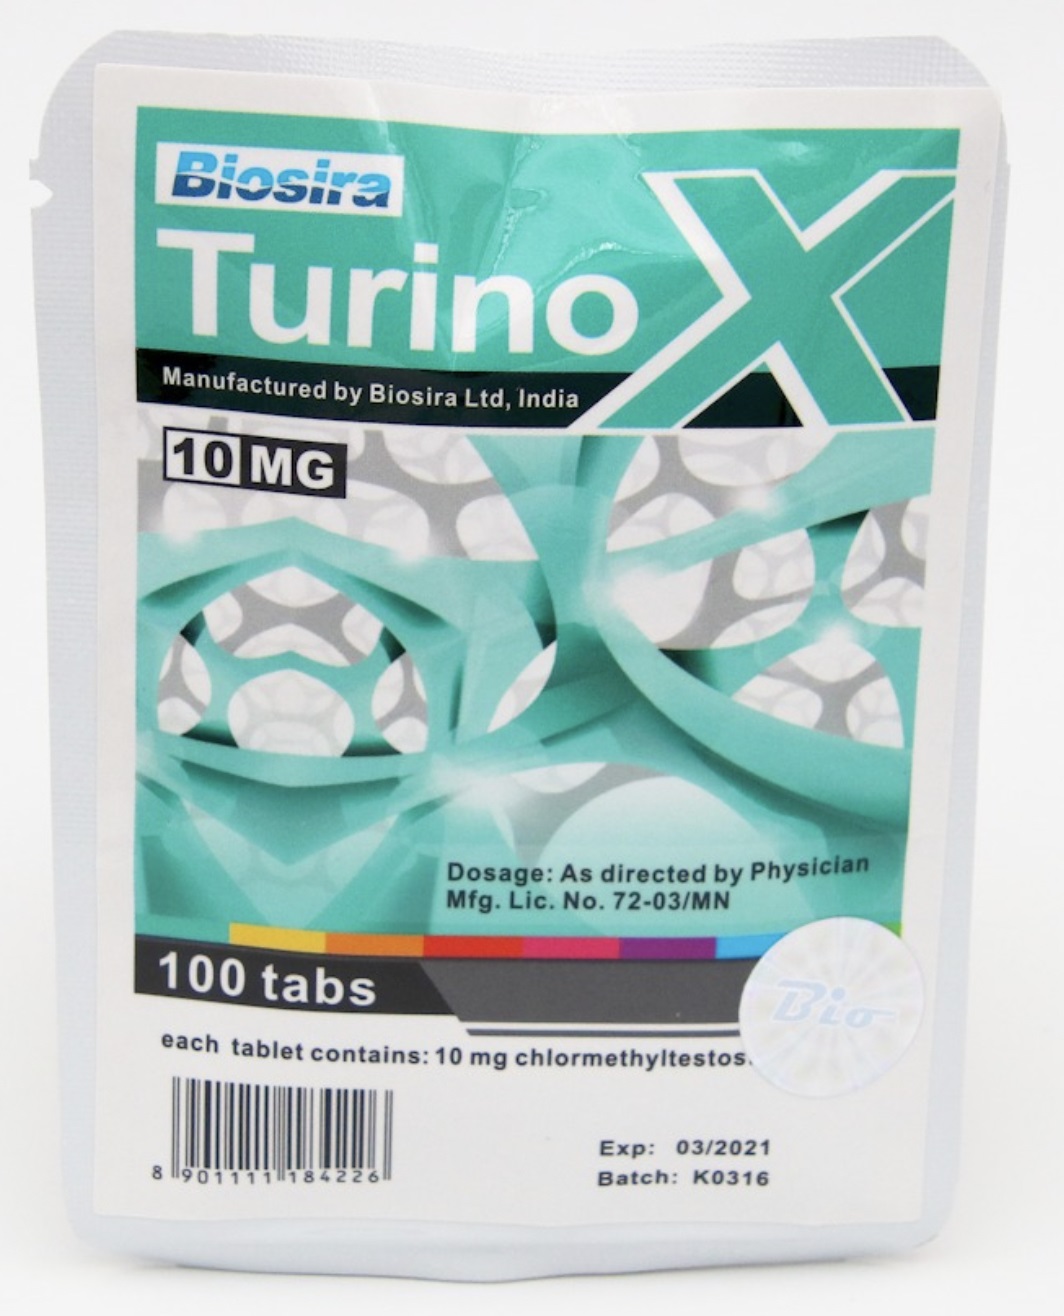 BIOSIRA TURINOX 10MG turinox.jpg